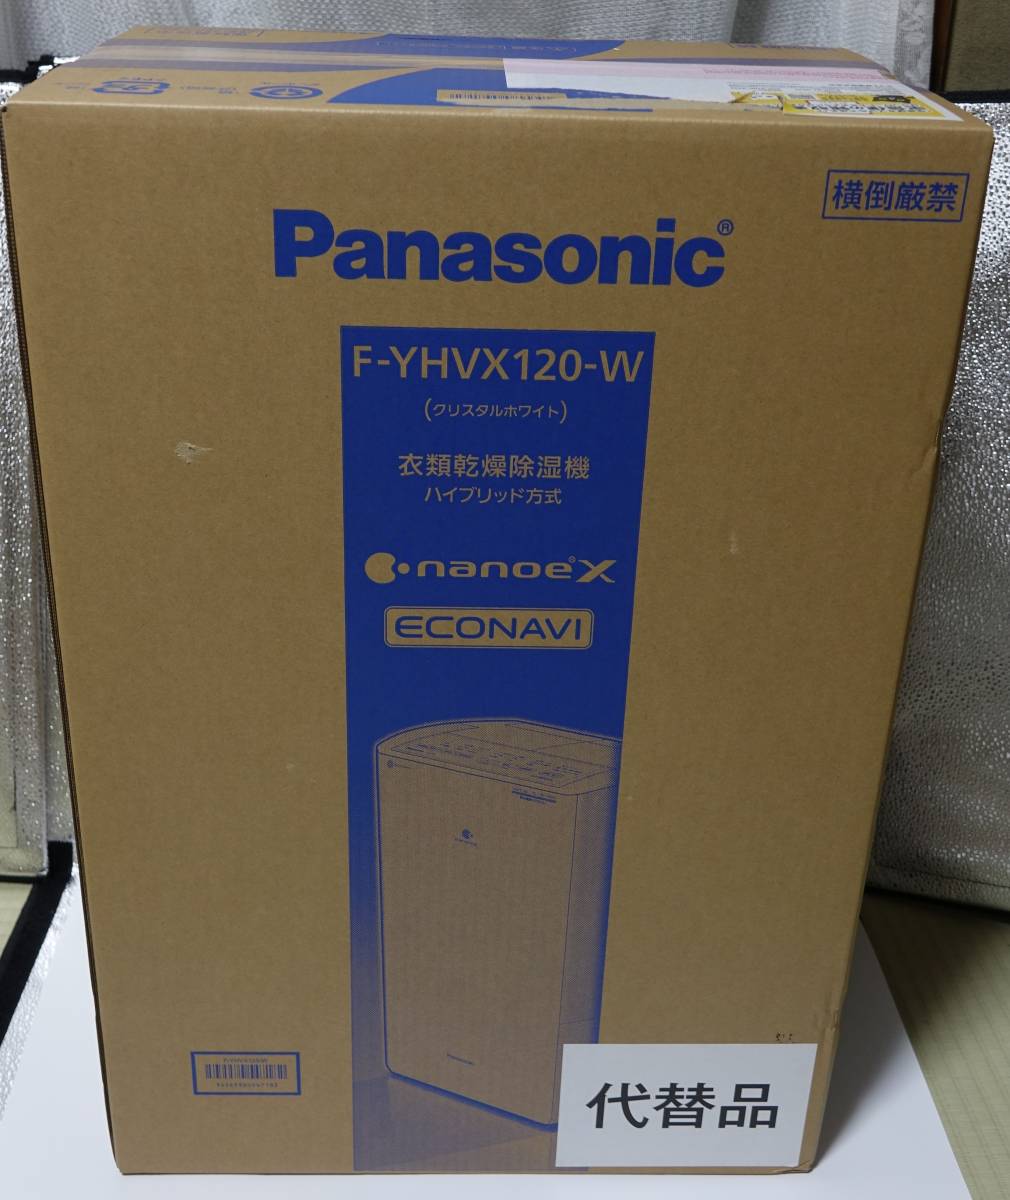 新品未開封 Panasonic F-YHVX120-W パナソニック衣類乾燥除湿機 www